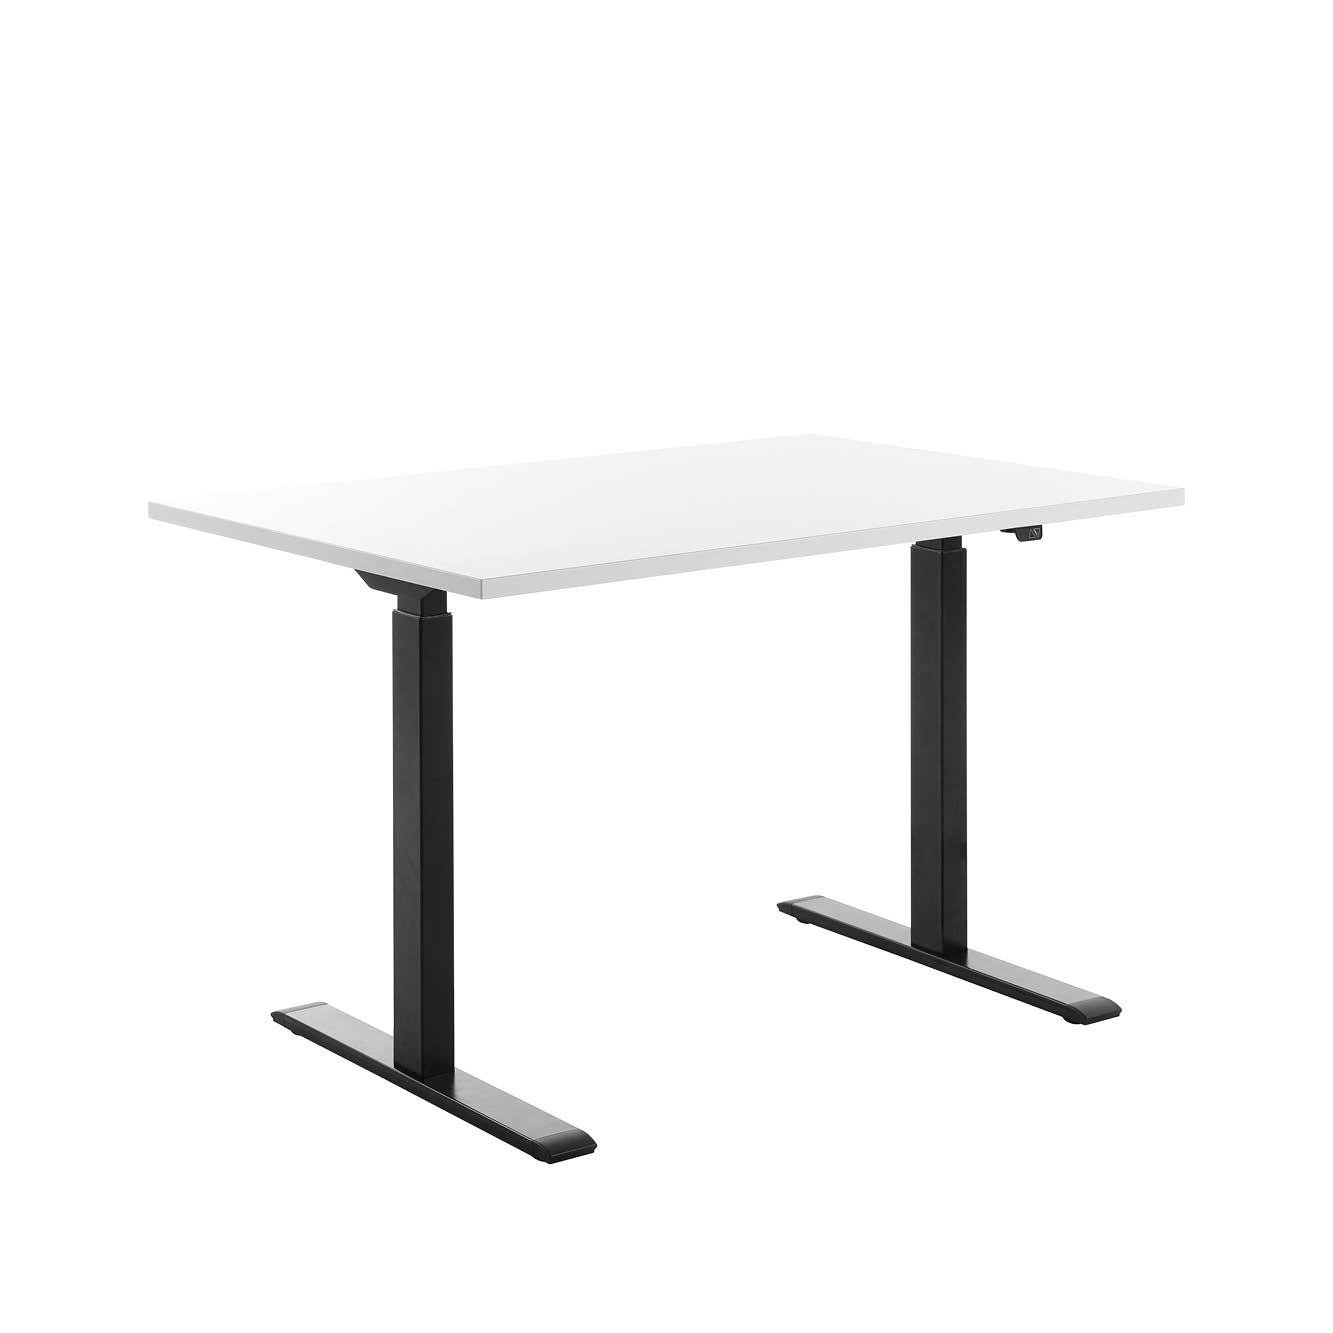 120 x 80 cm Schreibtisch Topstar Ergo E-Table höhenverstellbar - schwarz, weiss